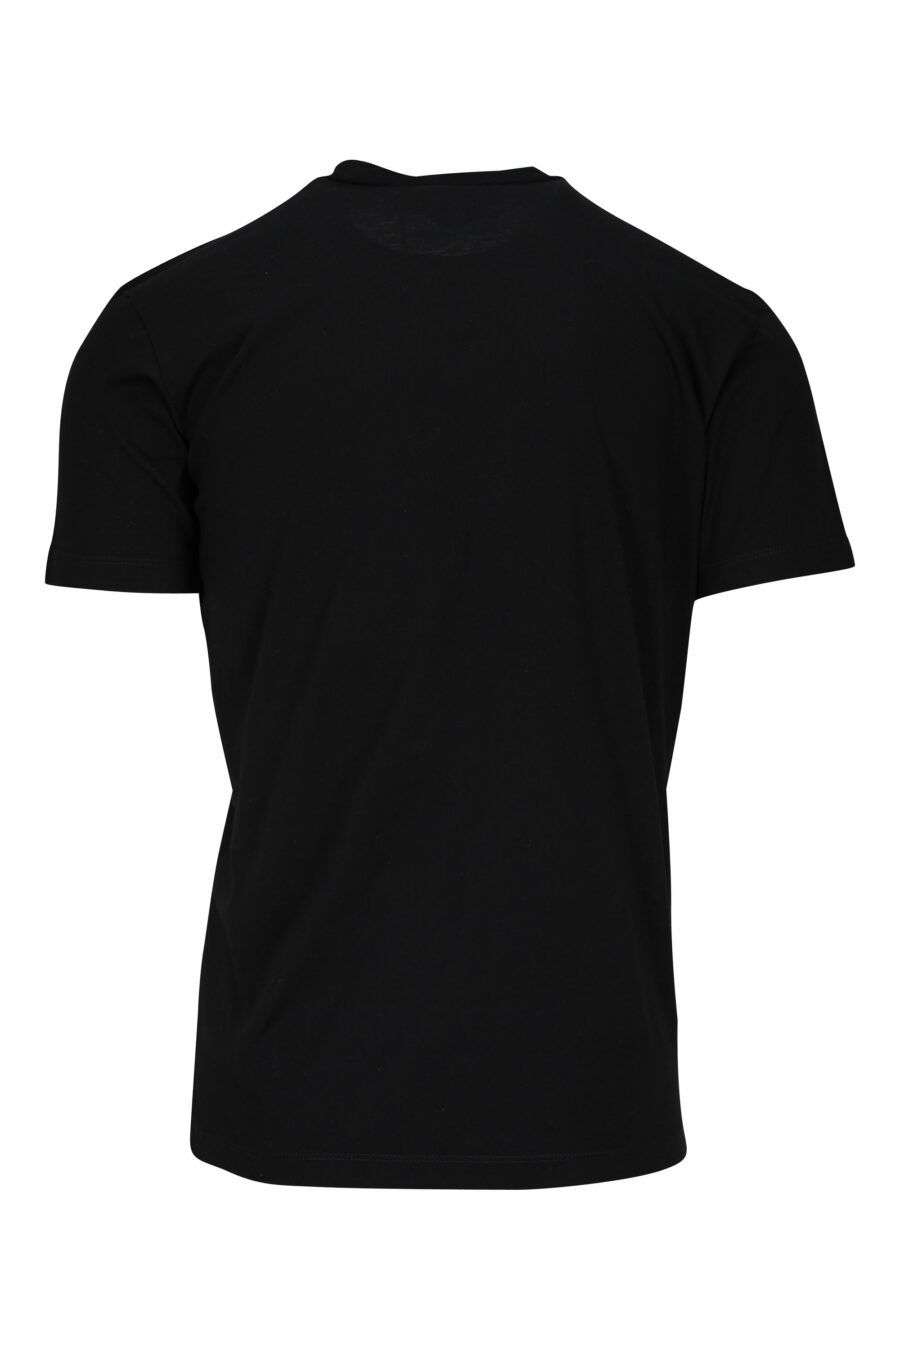 Camiseta negra con maxilogo rgb - 8052134941157 1